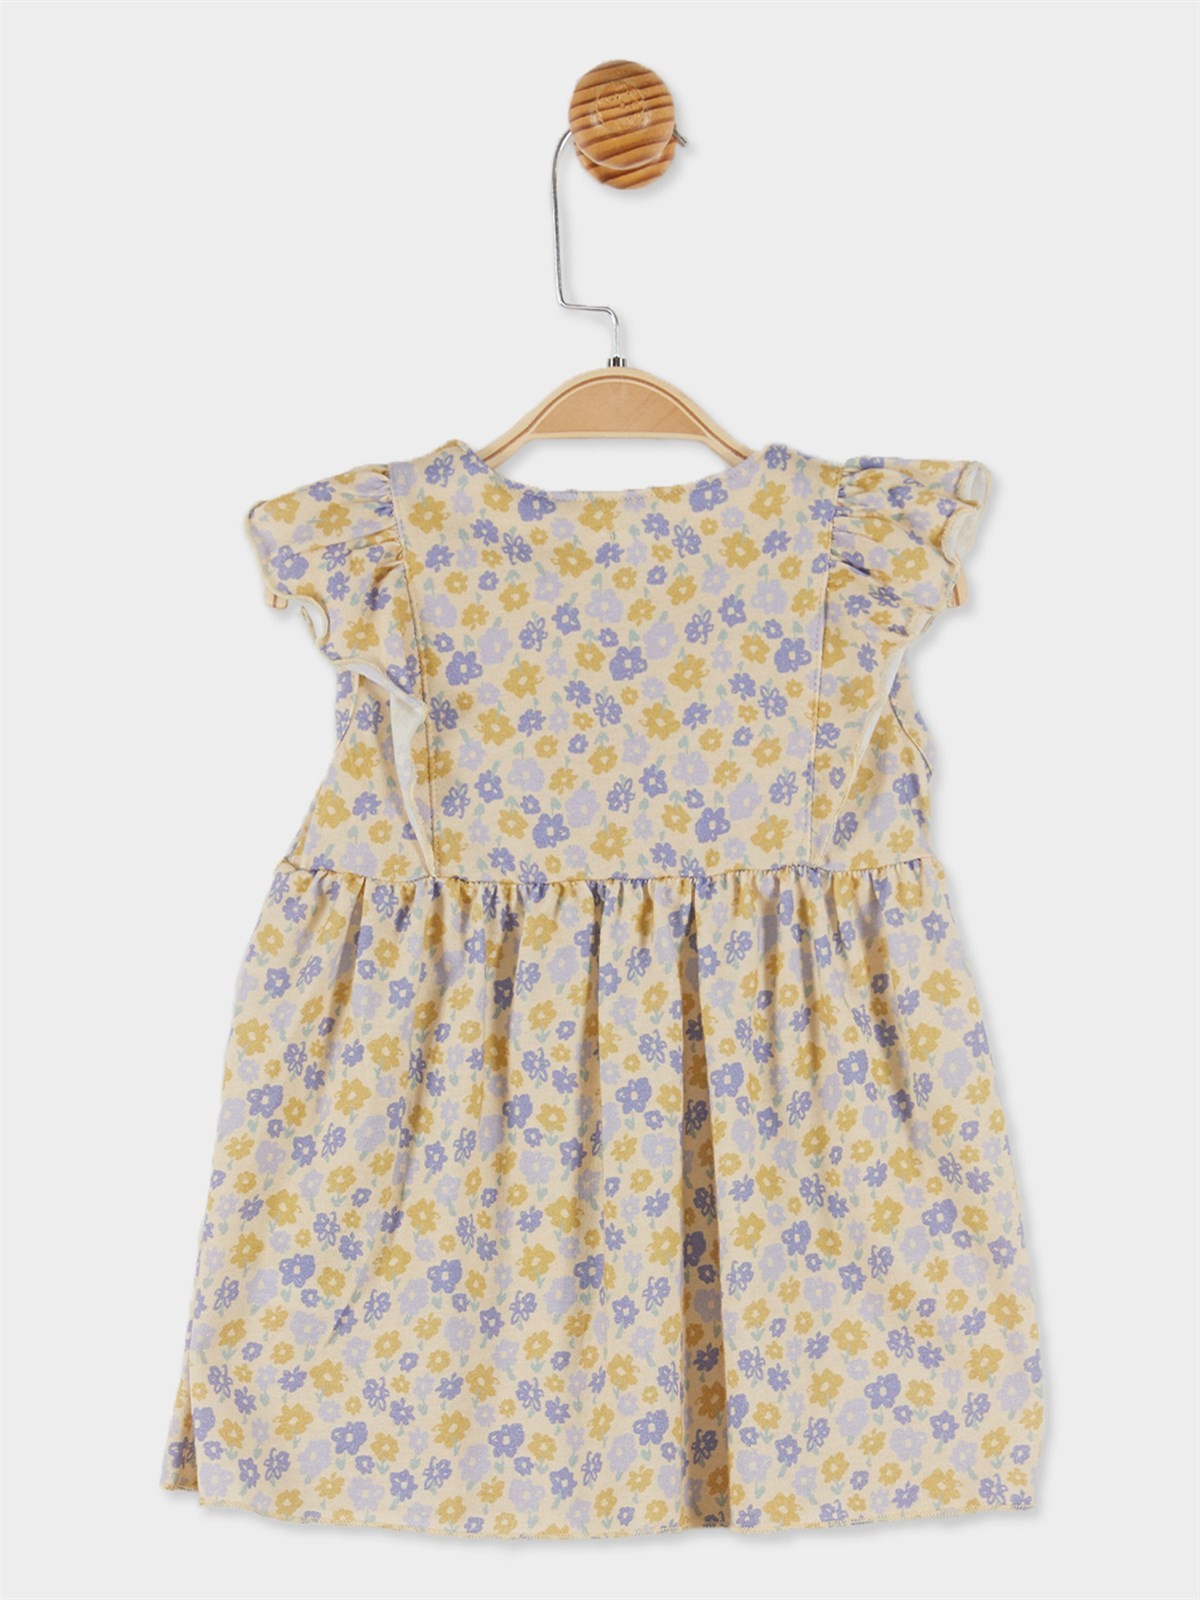 Panolino Kız Bebek Çiçek Desenli Kısa Kol Elbise 20880